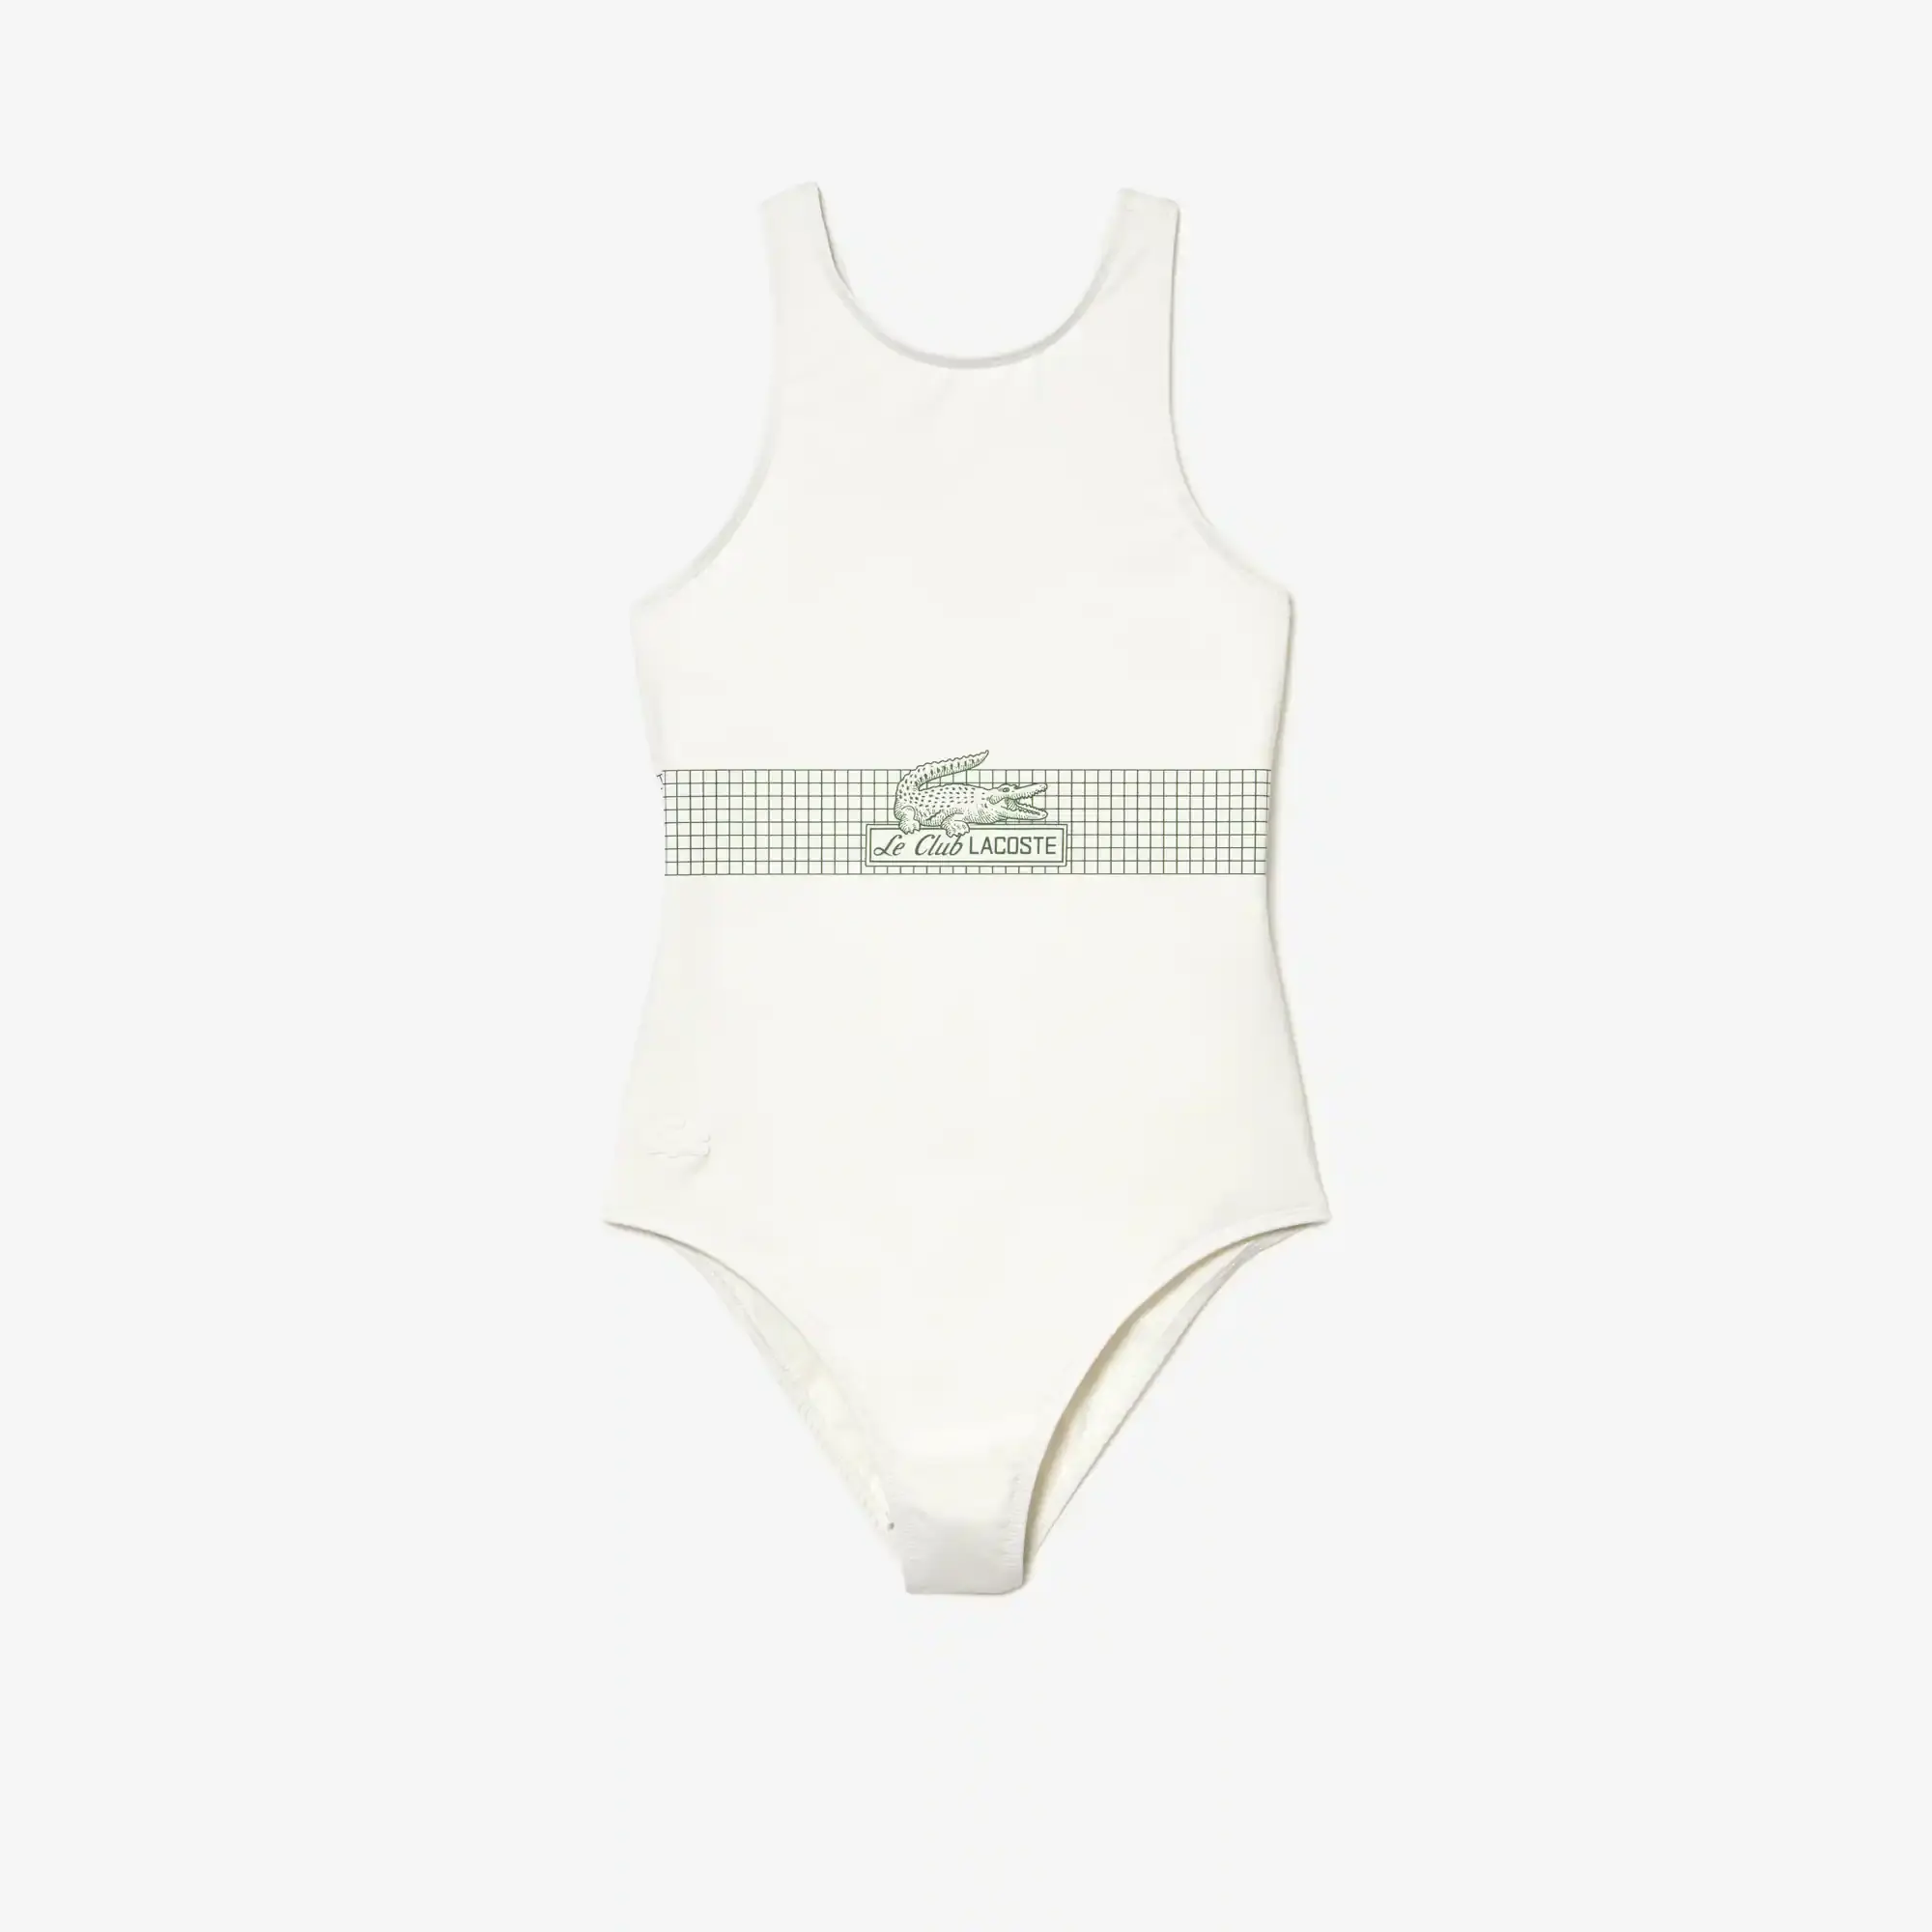 Lacoste Women’s Net Print Swimsuit. 2